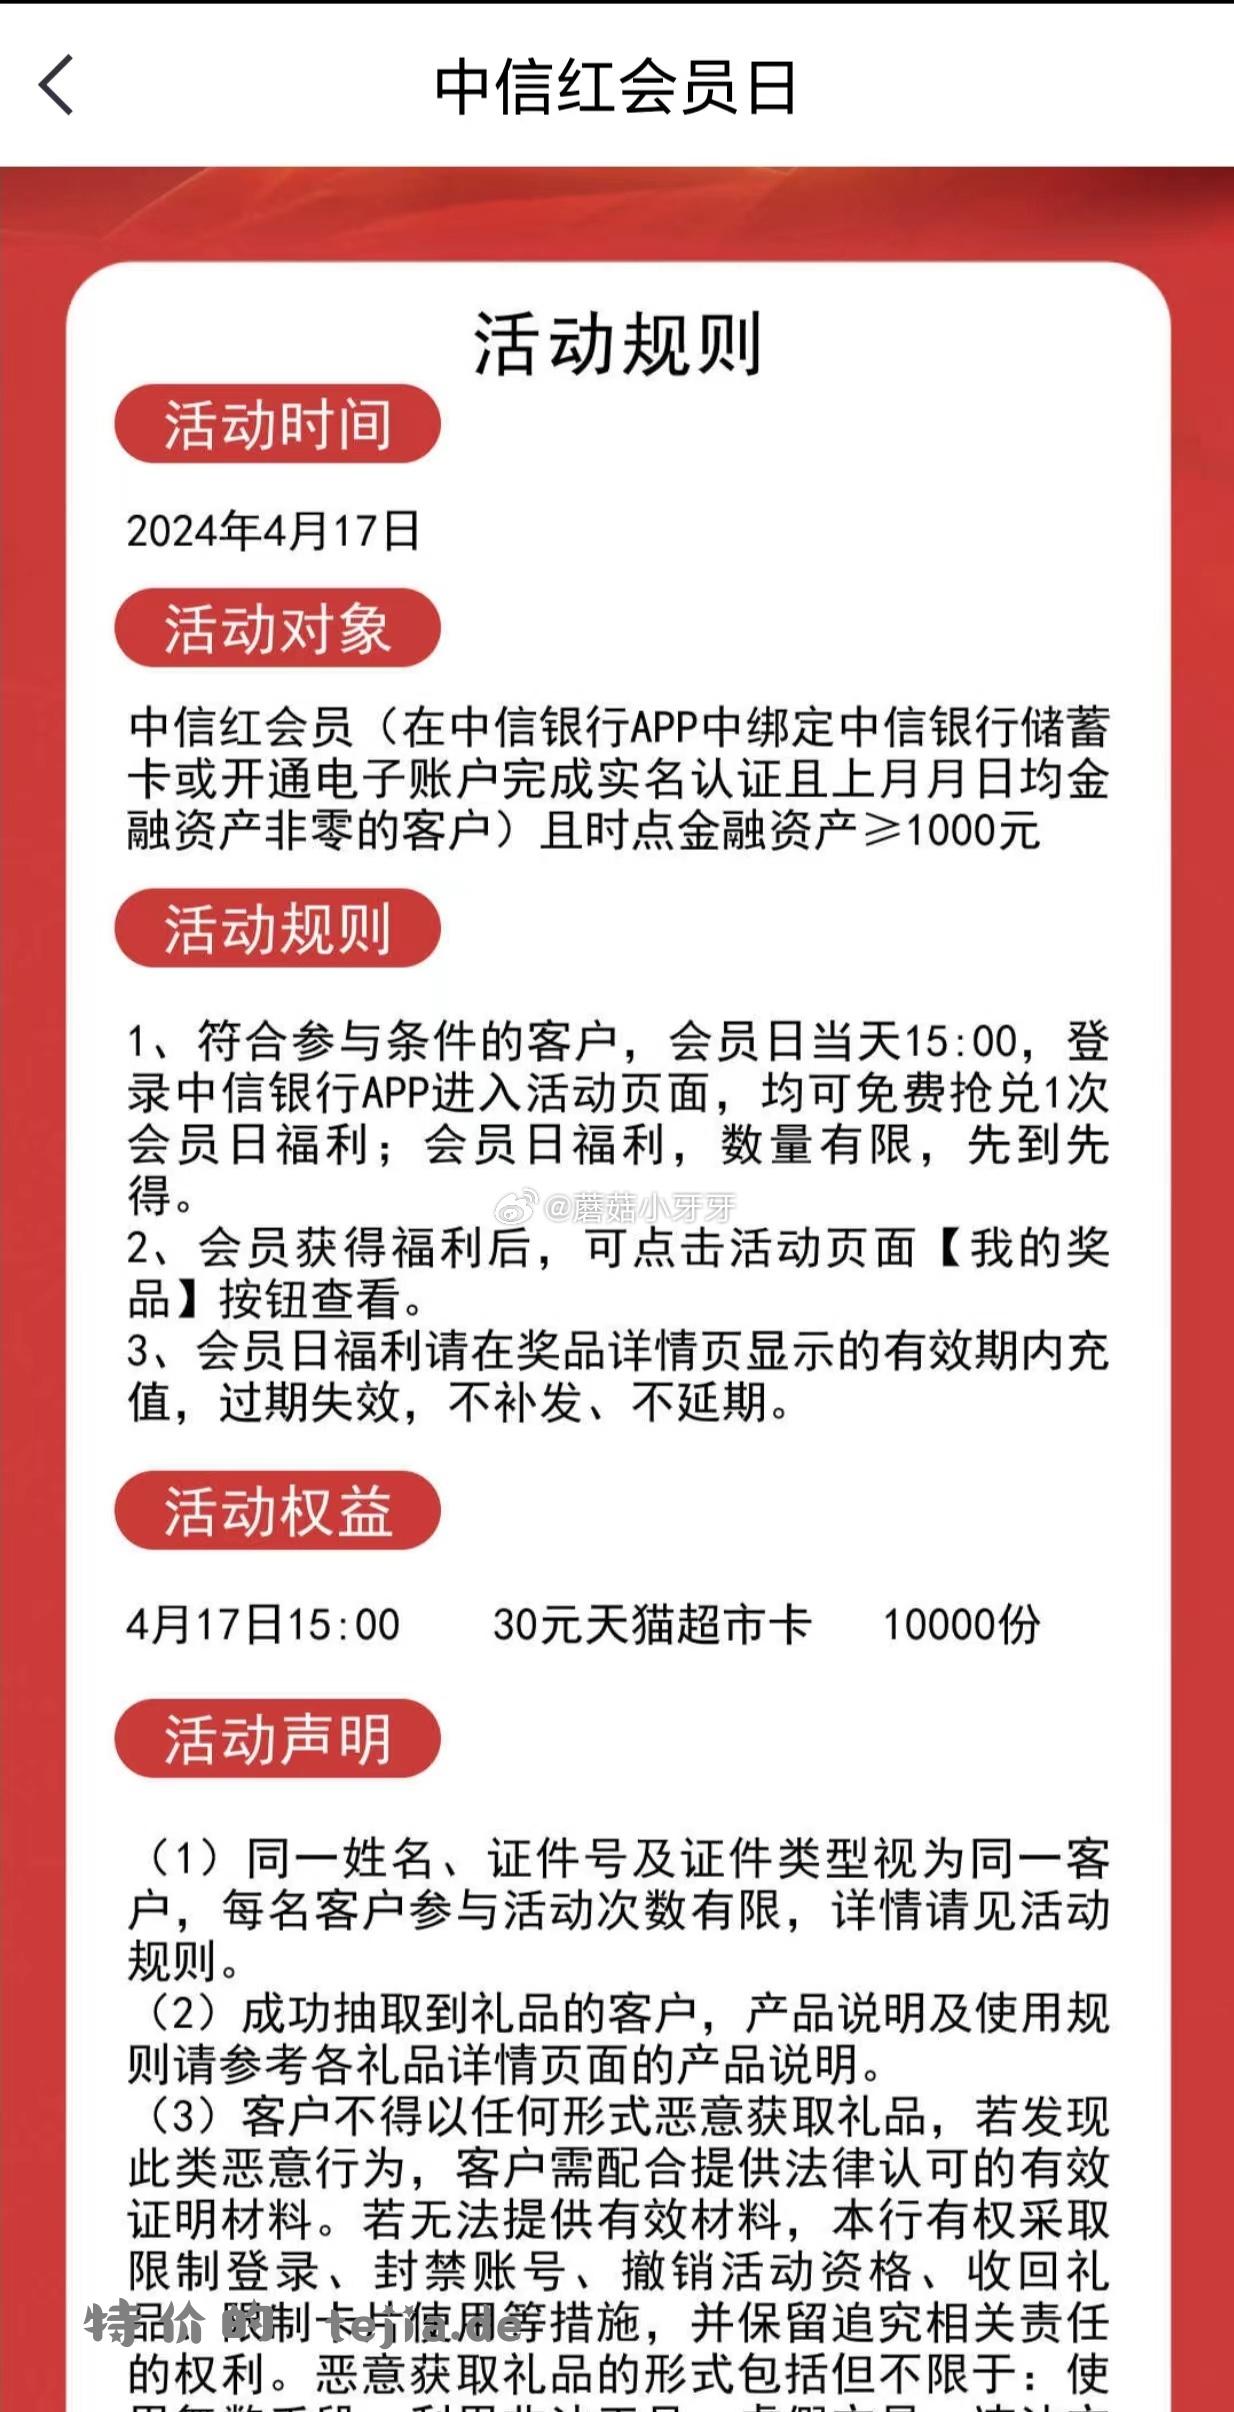 中信银行app 15点 1万份30元猫超卡 符合条件的留意 - 特价的